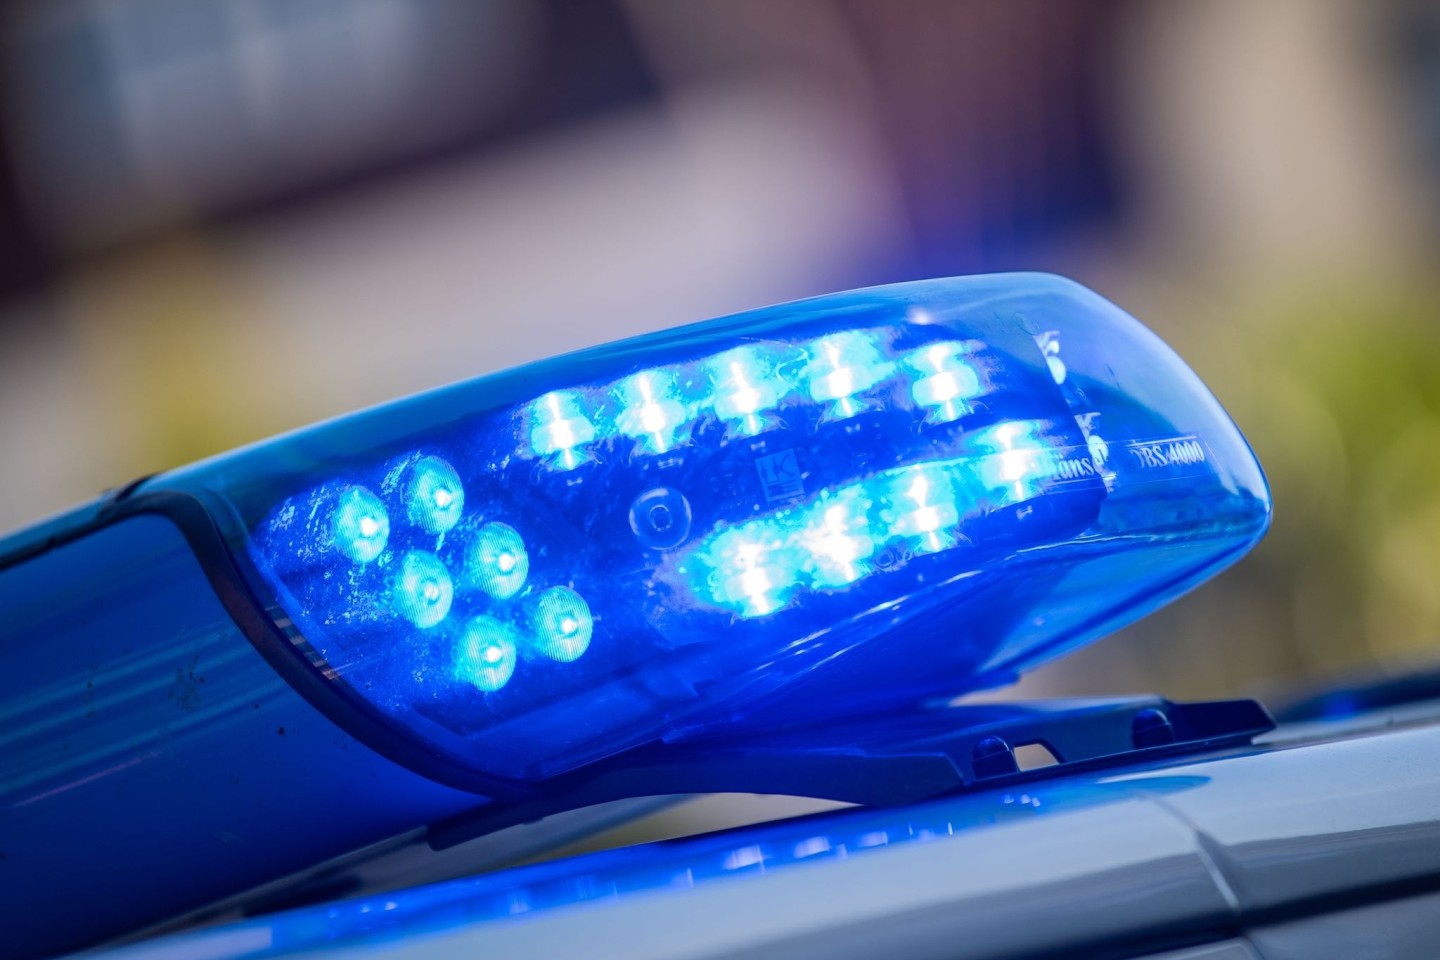 Blaulicht Berlin: Die Polizei sucht nach einem geflüchteten Mann, der einen anderen getötet haben soll.